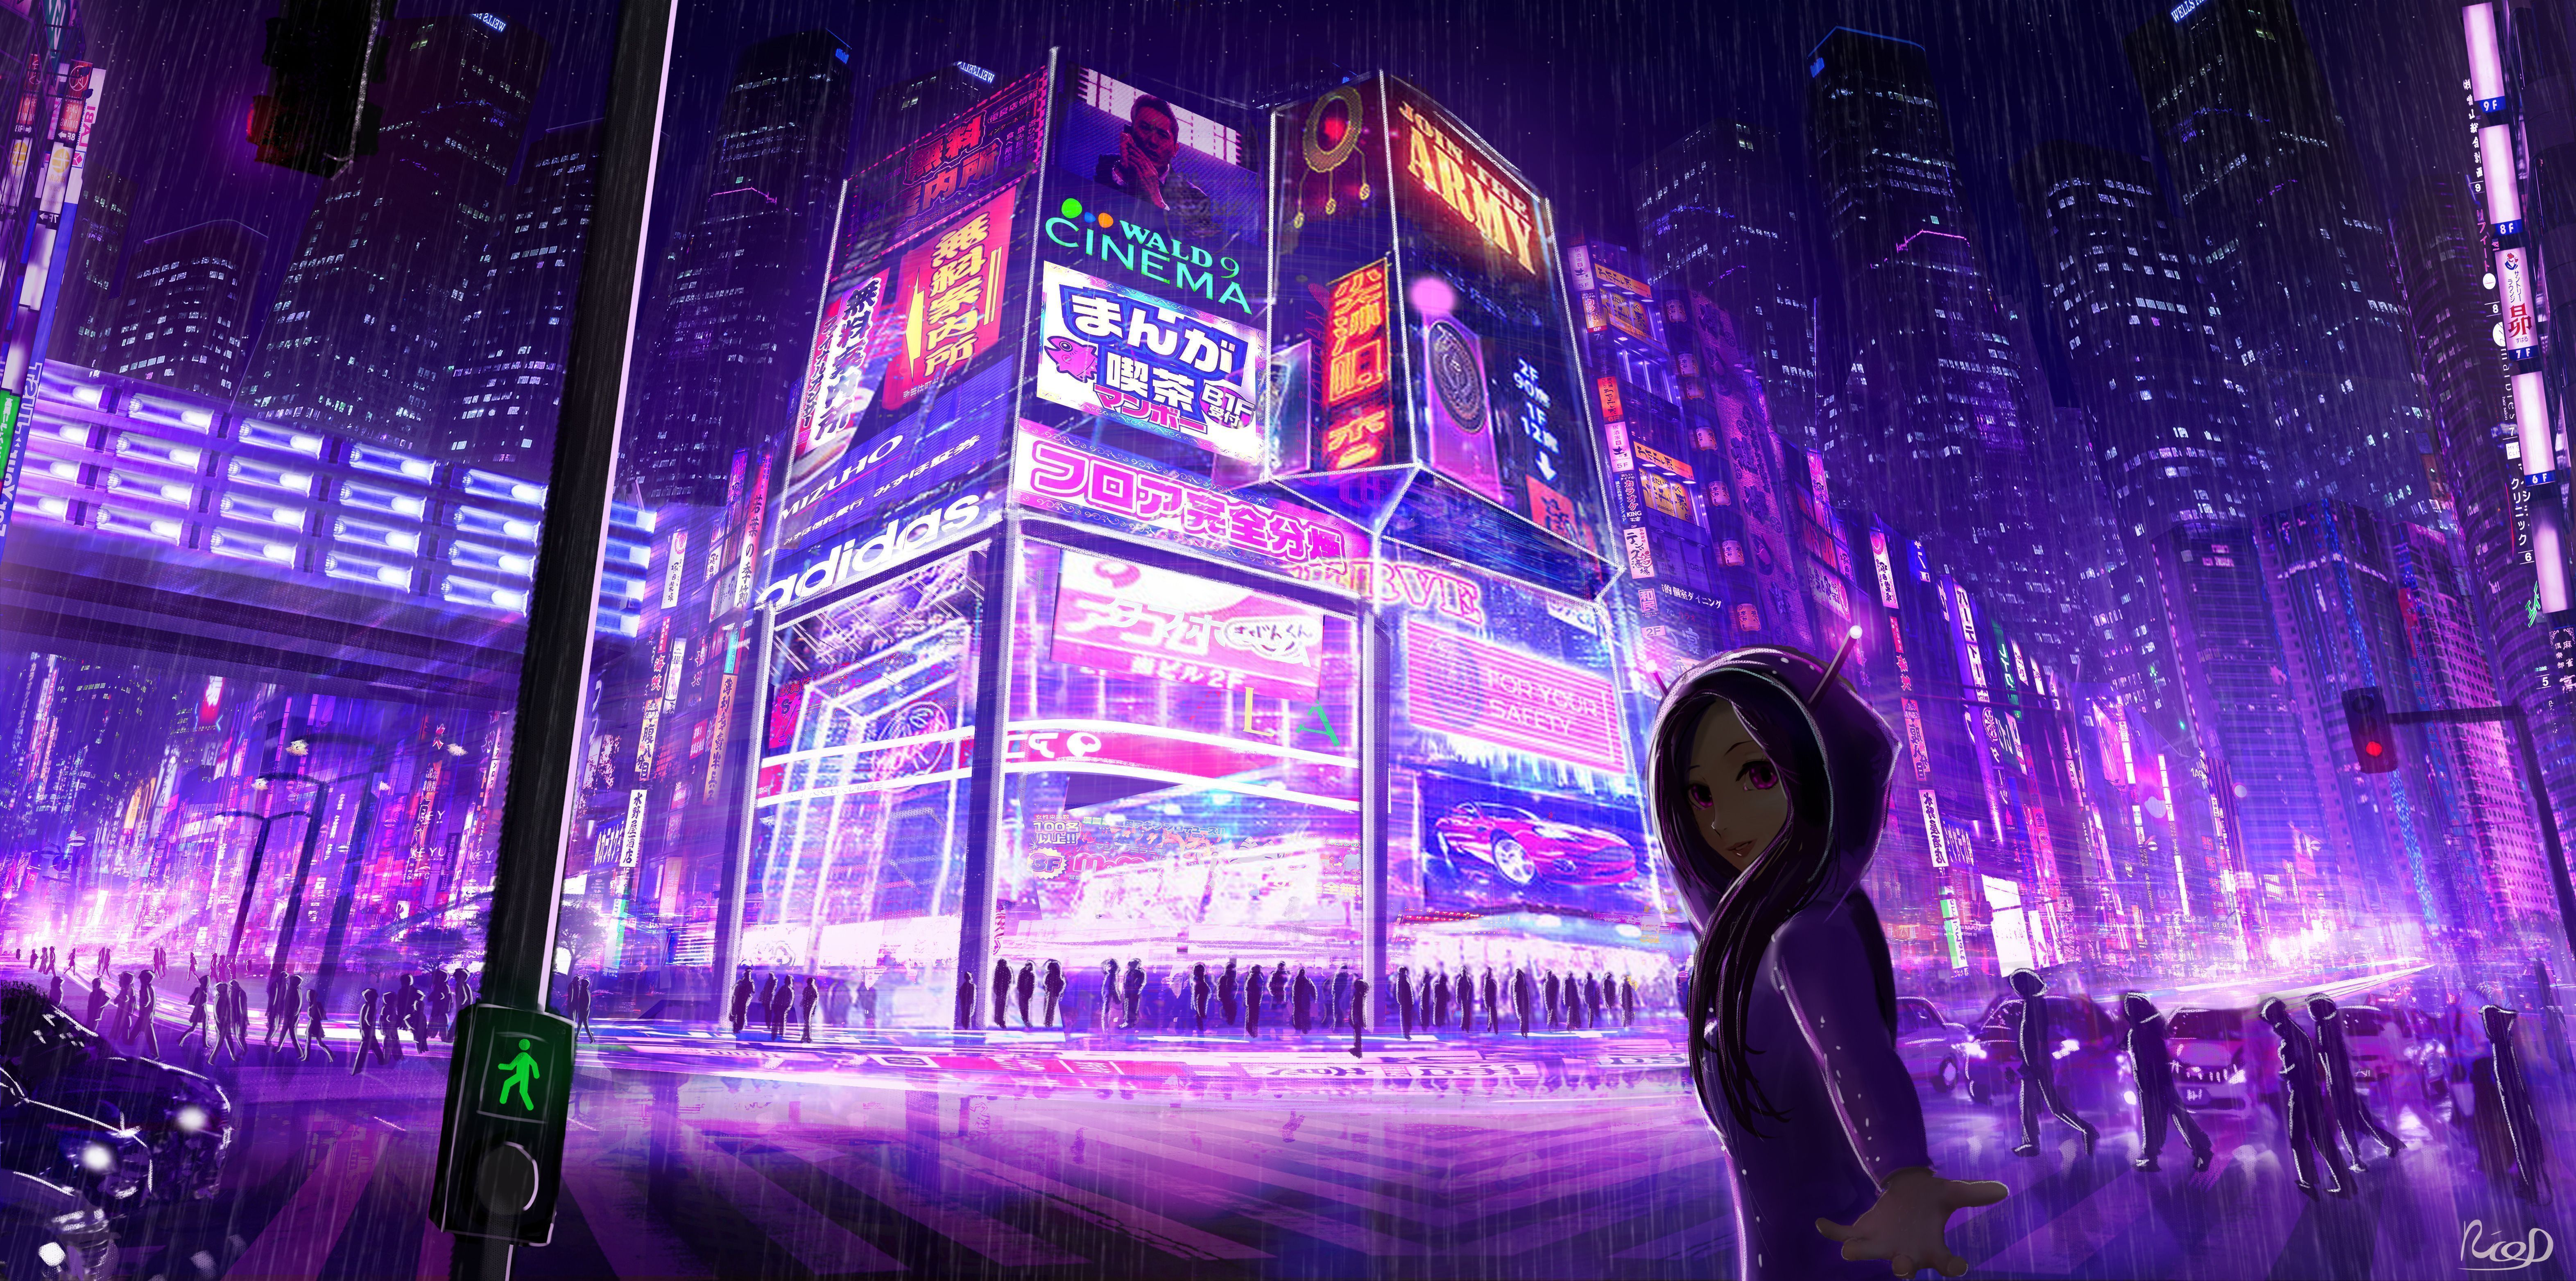 Cyberpunk 2077 wallpaper 2560x1440 for laptop - Neon purple, Cyberpunk, Cyberpunk 2077